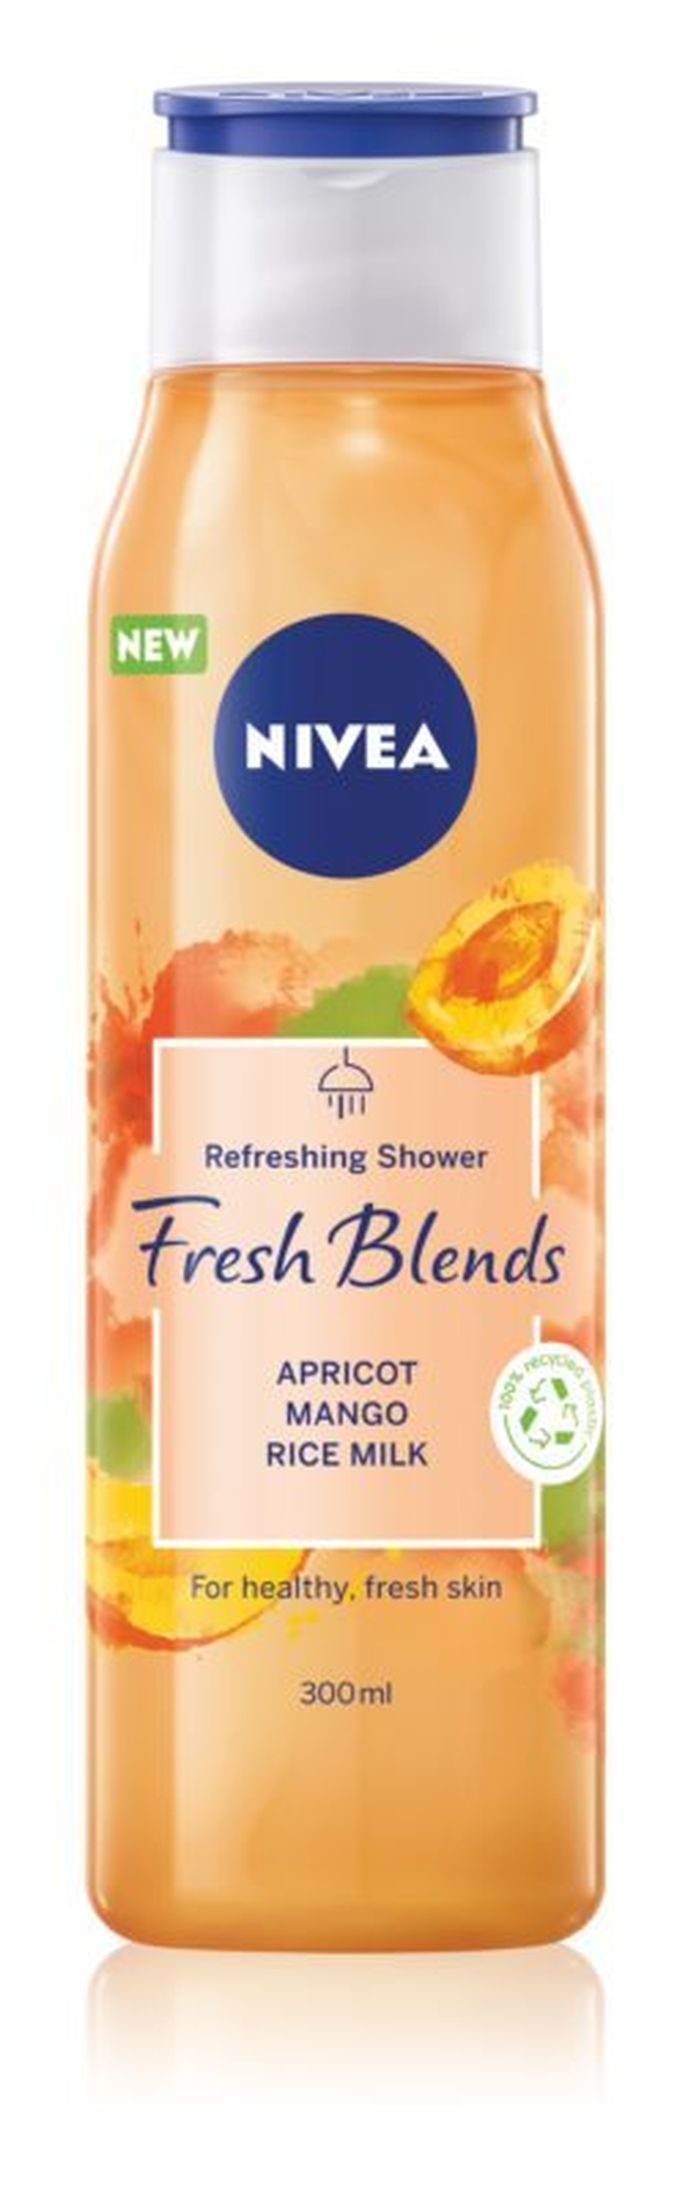 Osvěžující sprchový gel, Nivea, 119 Kč/300 ml